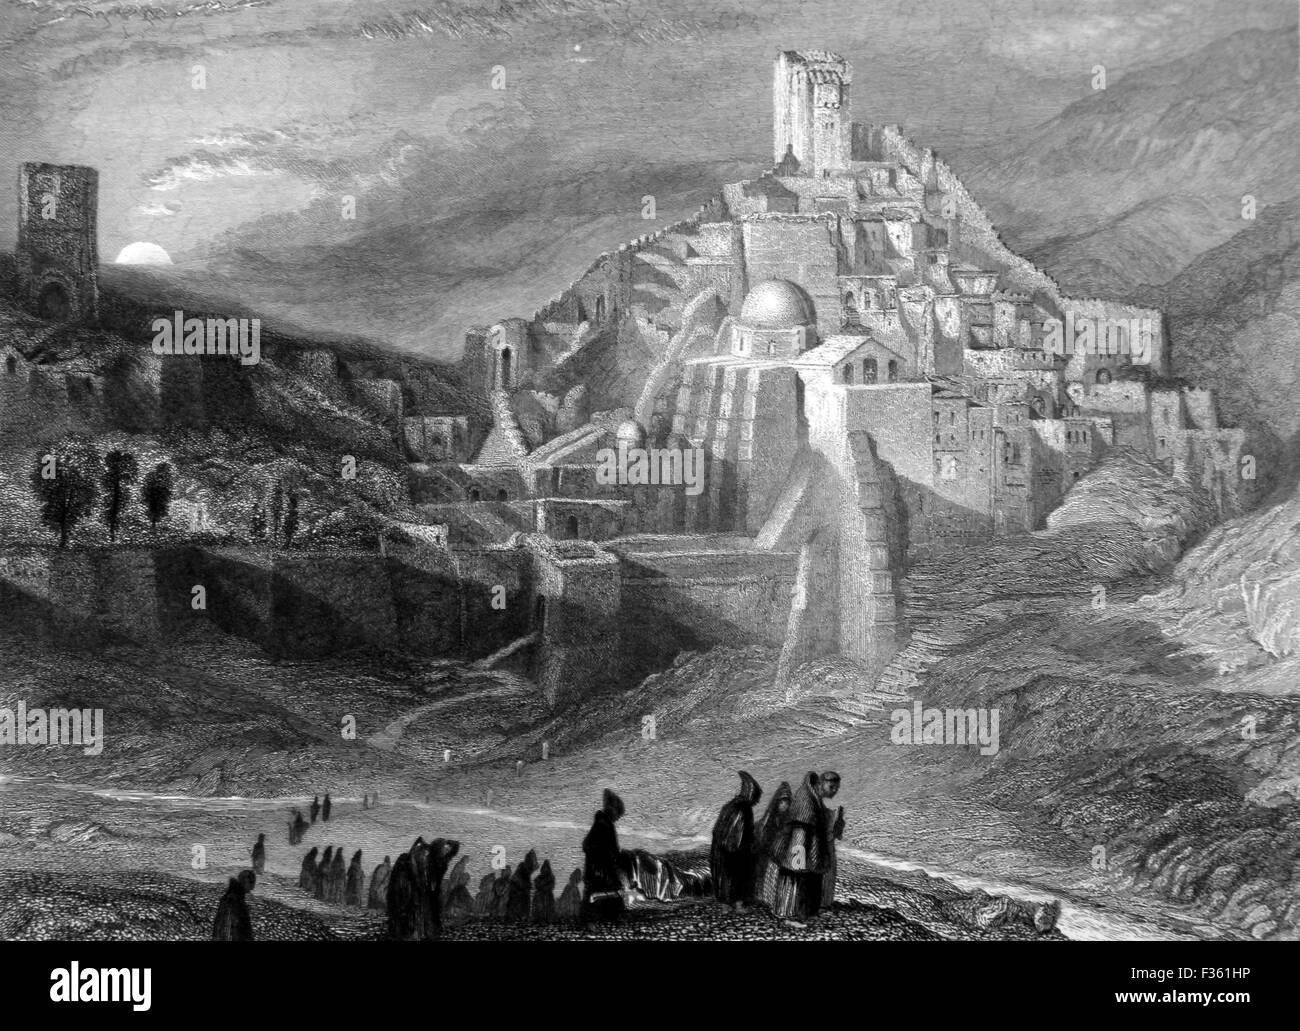 Le désert de Encedi et le couvent de Santa Saba ; noir et blanc Illustrations de paysages de la Bible Banque D'Images